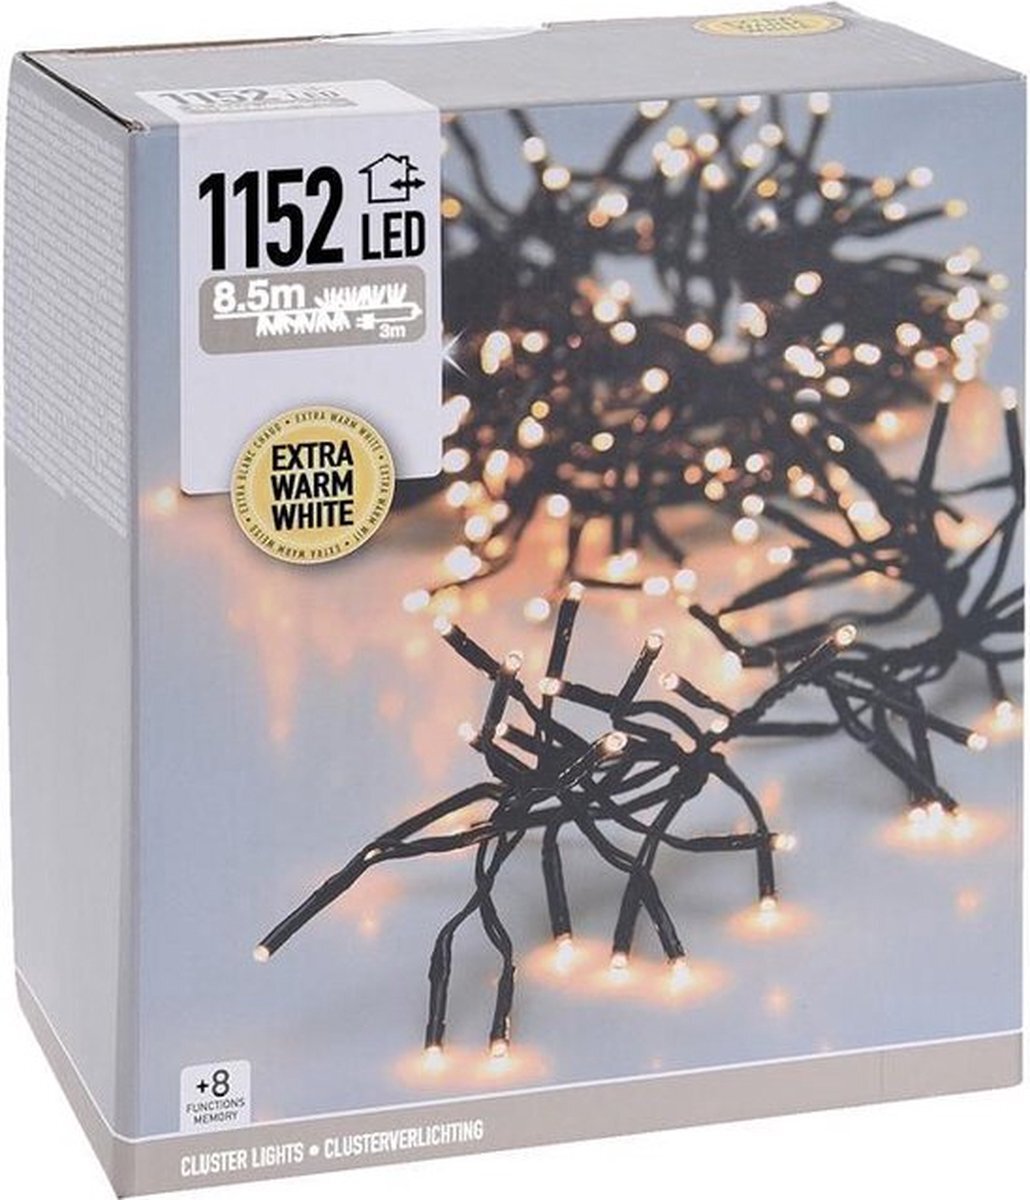 Luksus - dimbare Microcluster kerstverlichting 1152 Led extra warm wit - 8.5 meter voor binnen en buiten